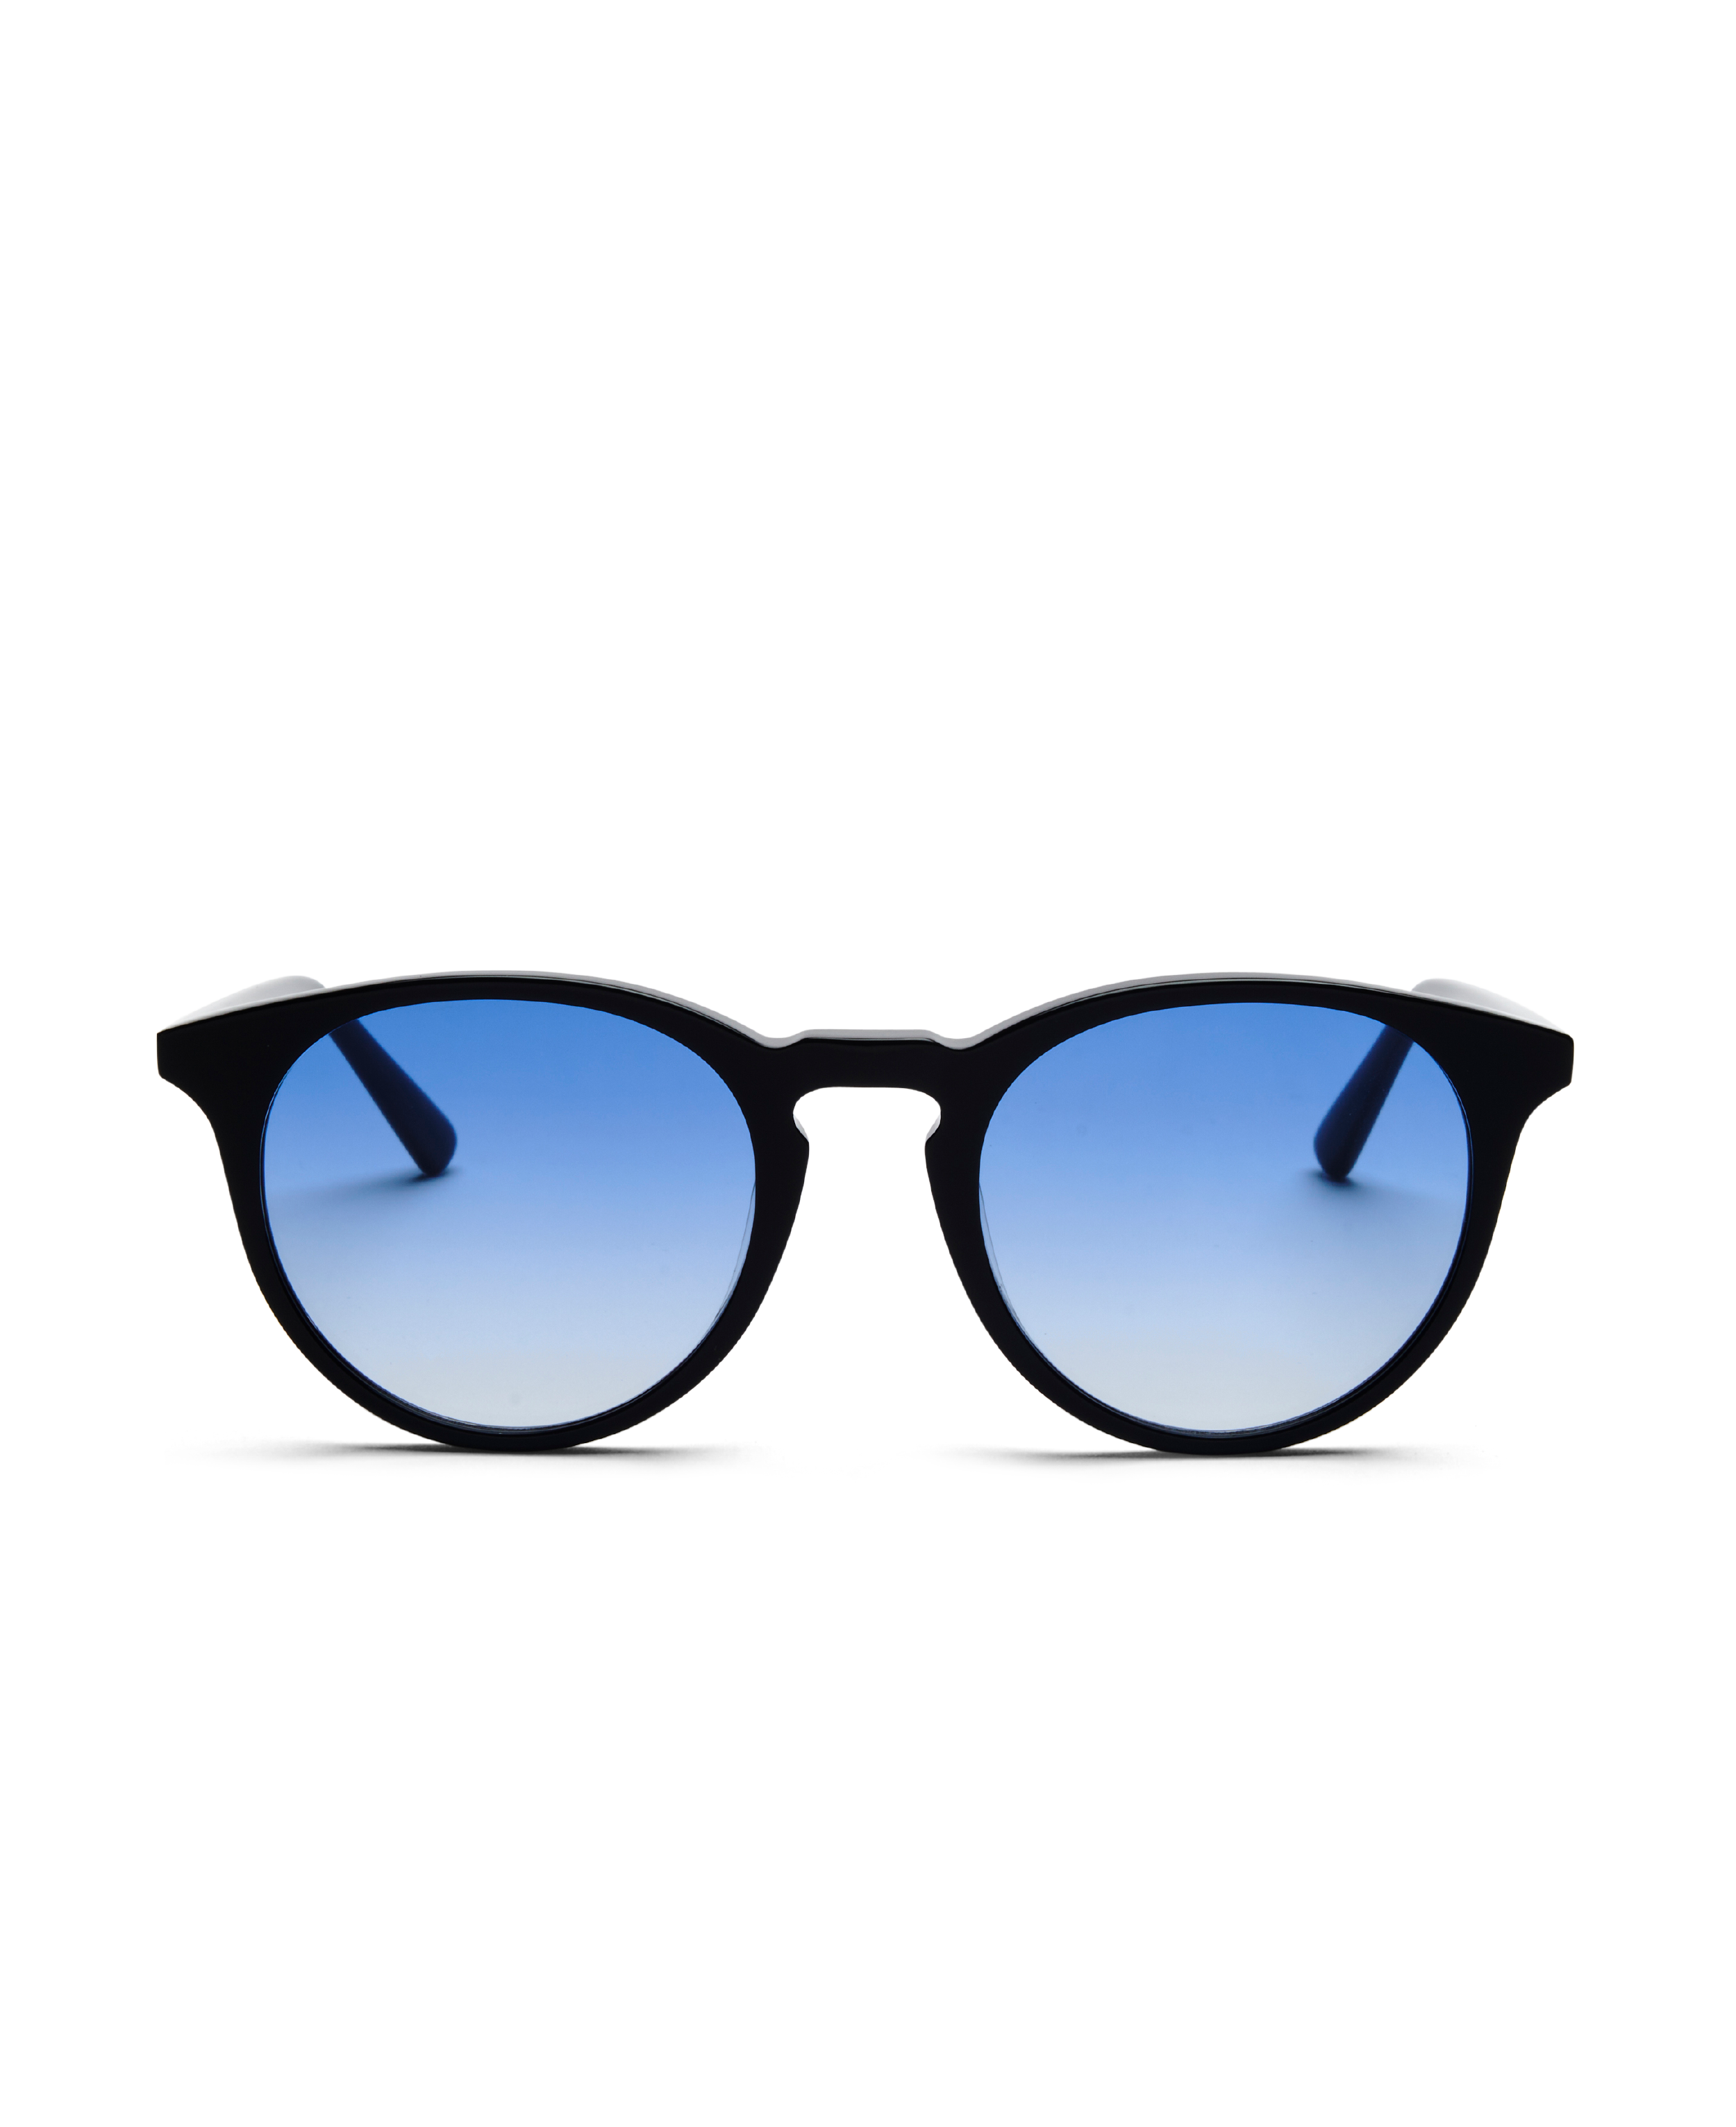 Sunglasses New Depp in Black w. Blue lenses